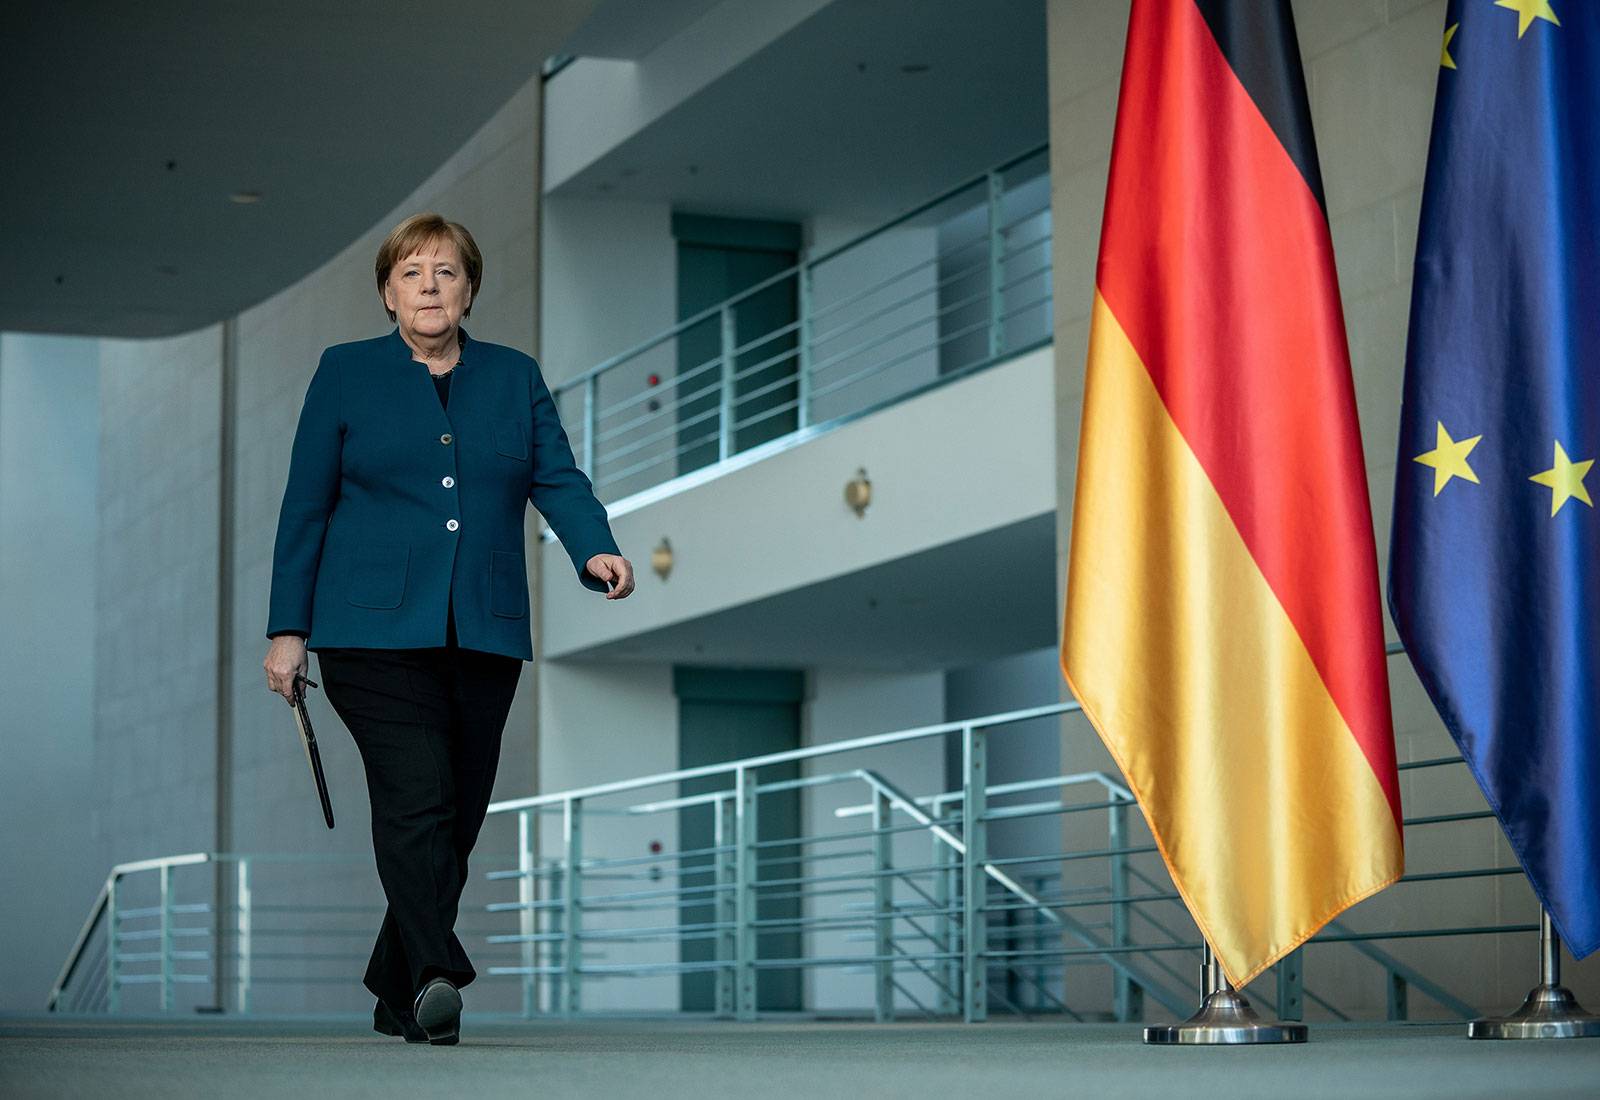 «Цвет и стиль играет большую роль»: Меркель призналась, что тщательно подходит к выбору одежды перед переговорами